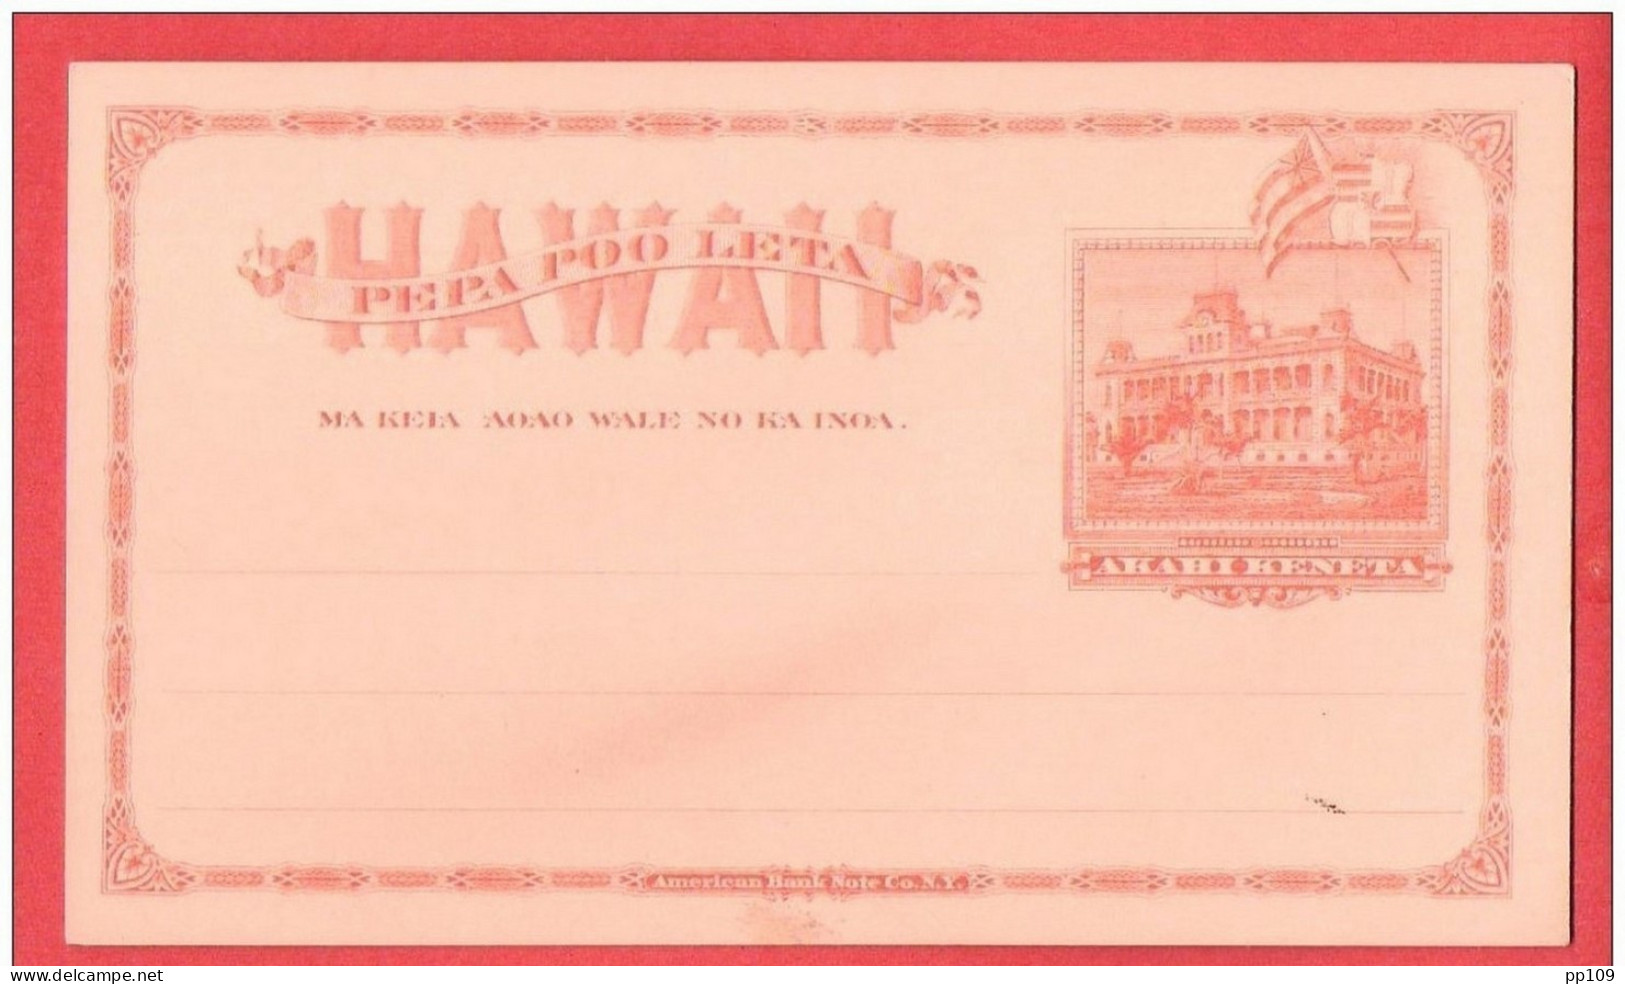 Entier Postal Neuf HAWAAI   TB état   AKAHIKENETA - Hawaii